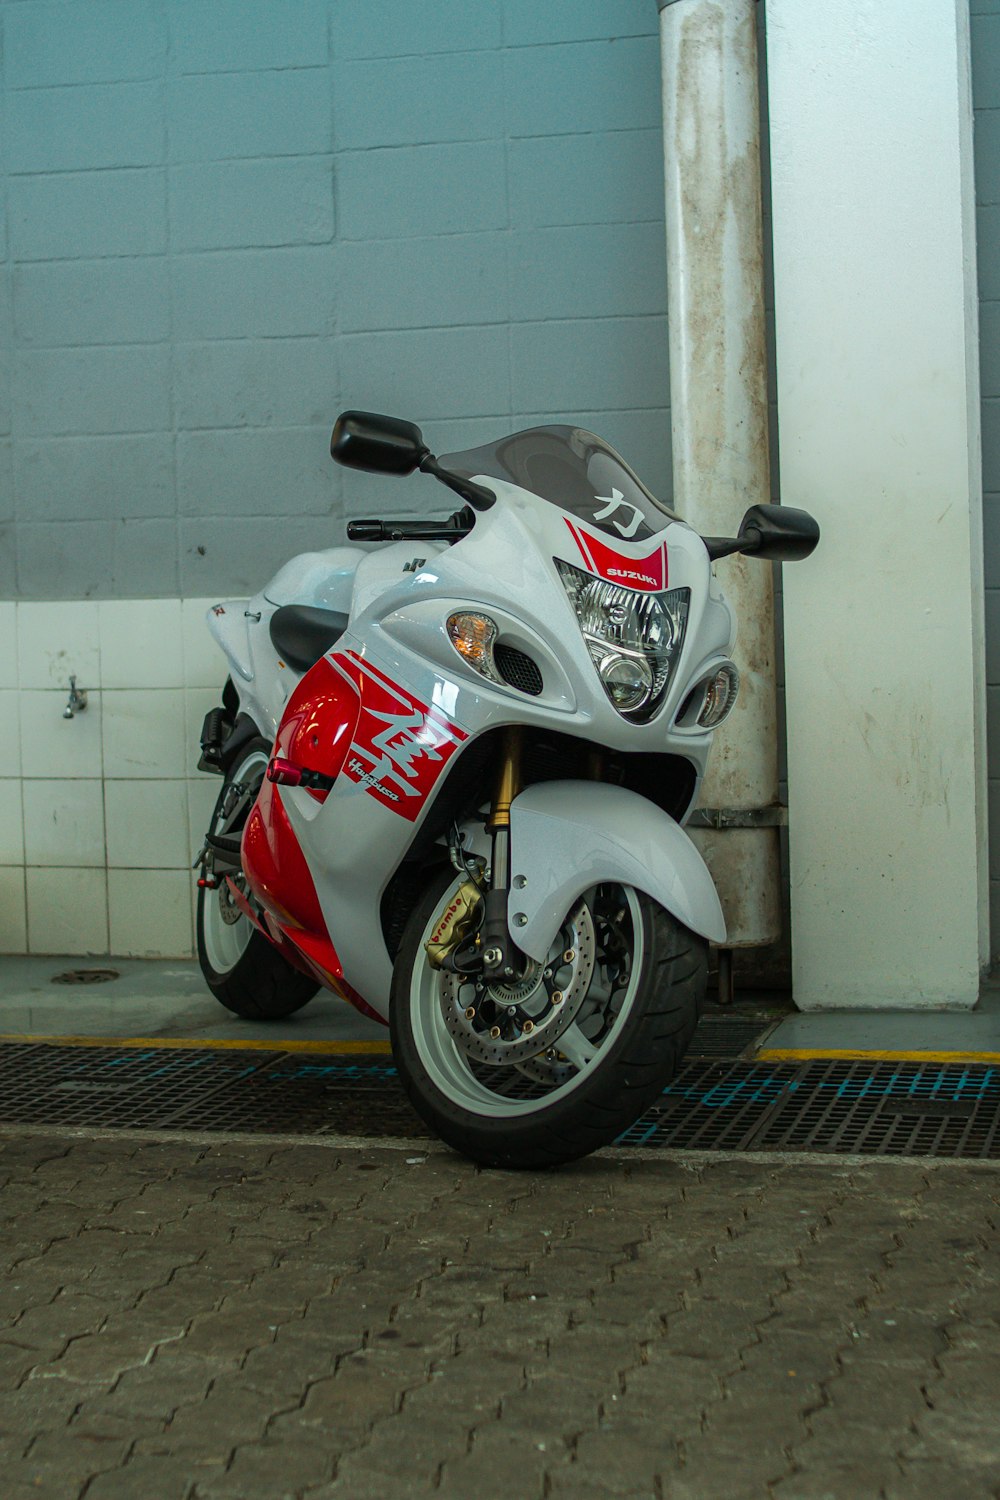 Una motocicleta roja y blanca estacionada frente a un edificio